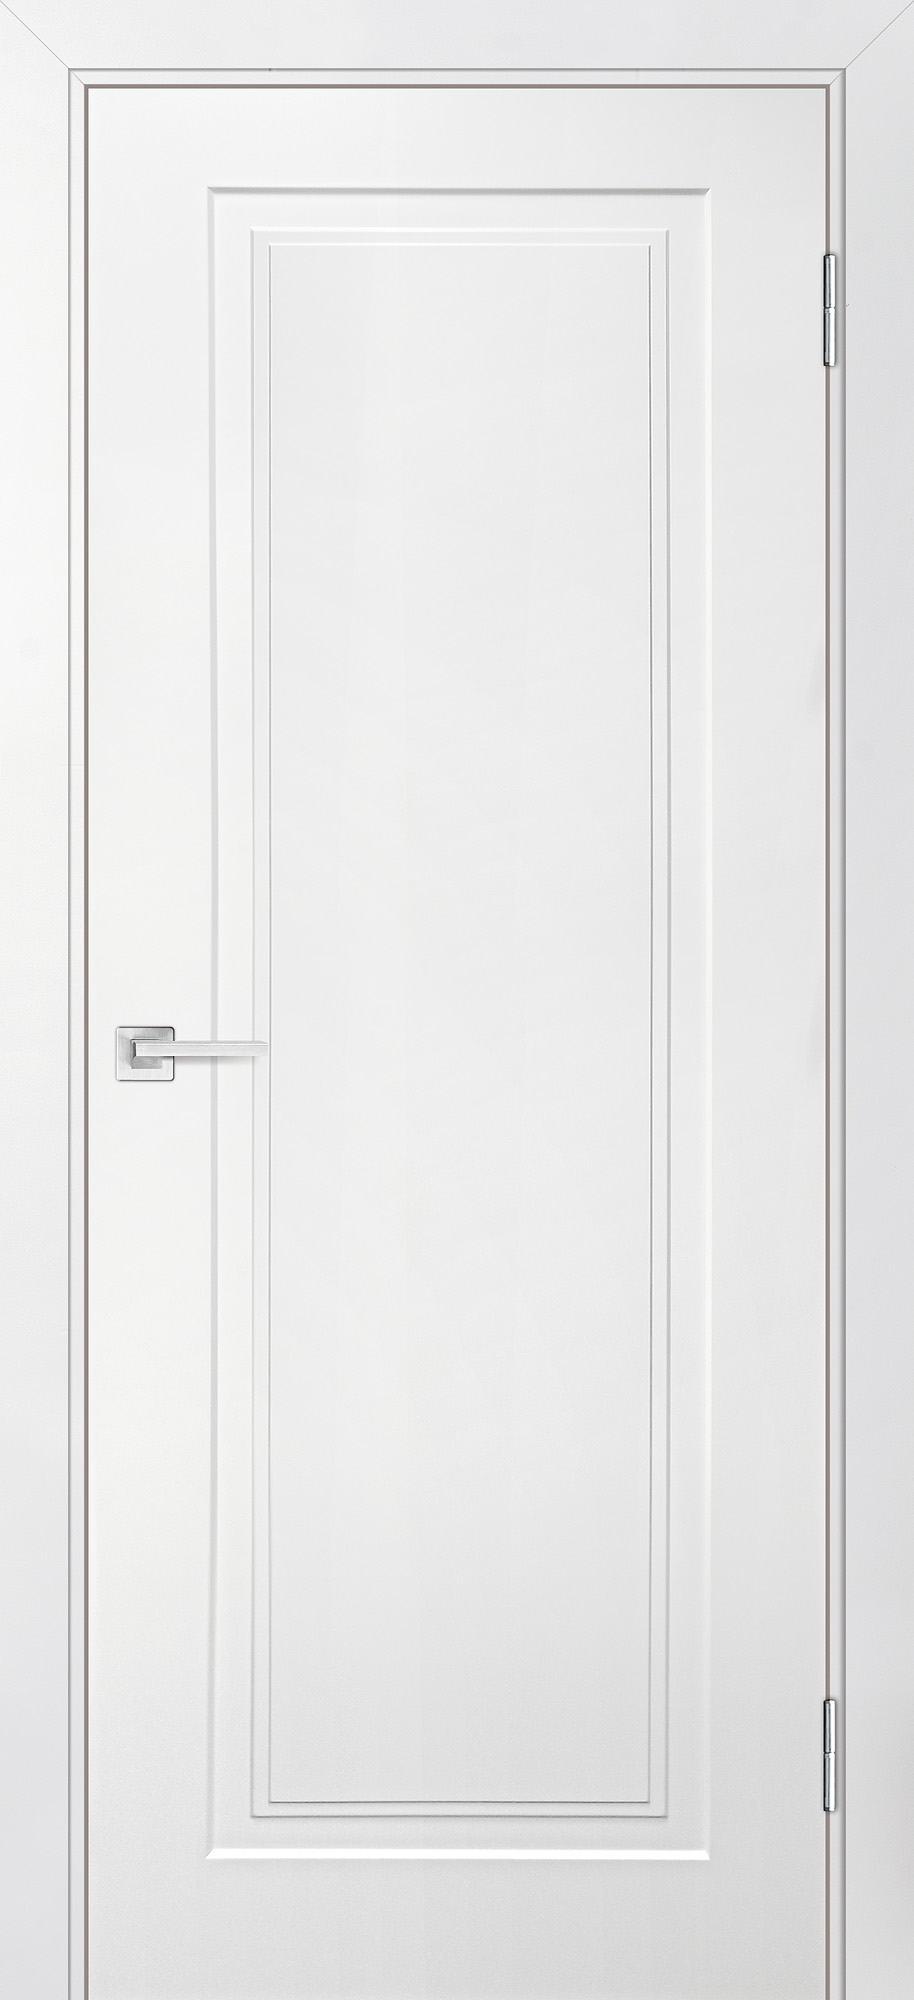 Двери крашеные (Эмаль) ТЕКОНА Смальта-Лайн 06 глухое Белый ral 9003 размер 190 х 60 см. артикул F0000093277